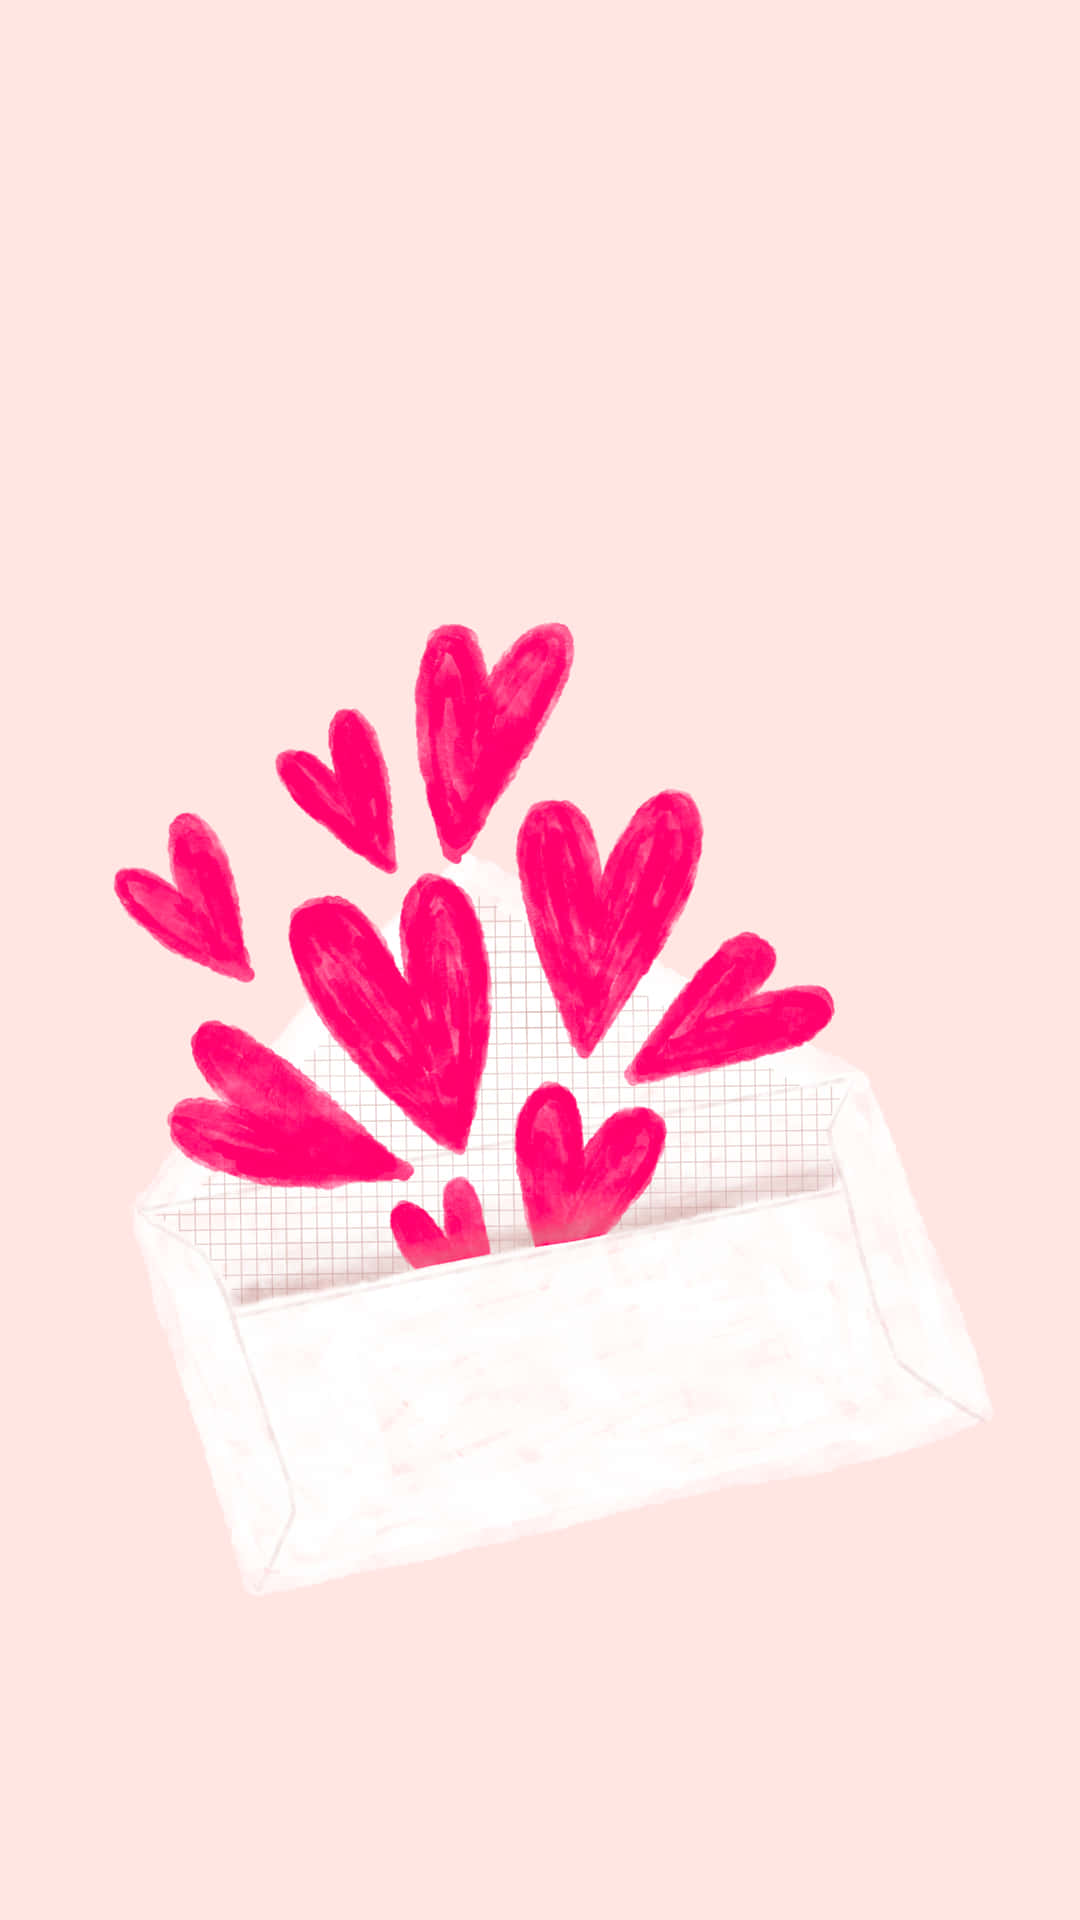 Valentine's Day Card - Valentine's Day Card Wallpaper